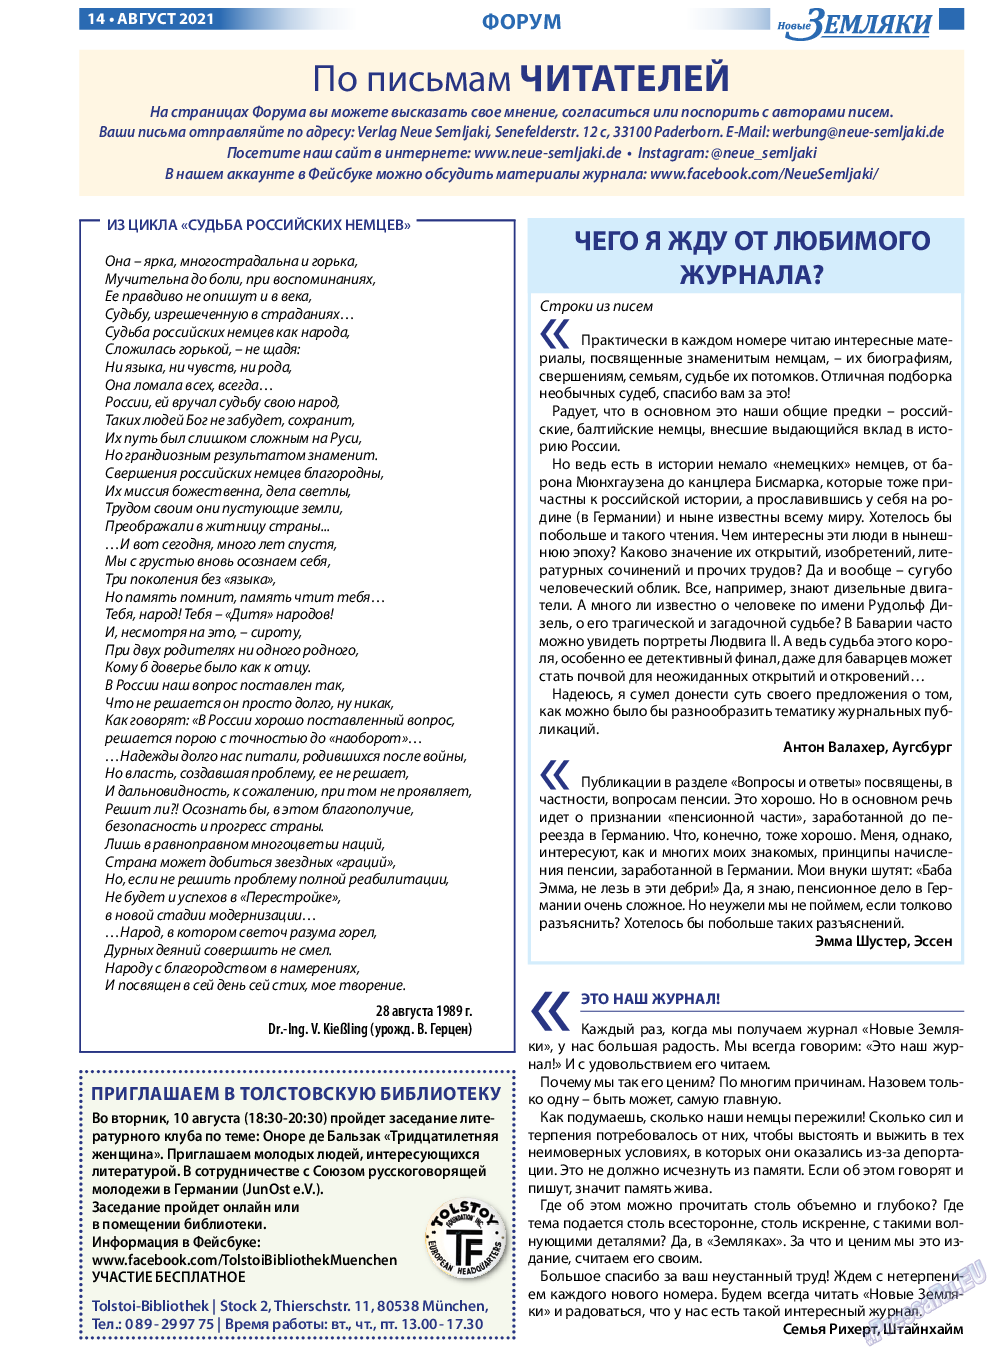 Новые Земляки, газета. 2021 №8 стр.14